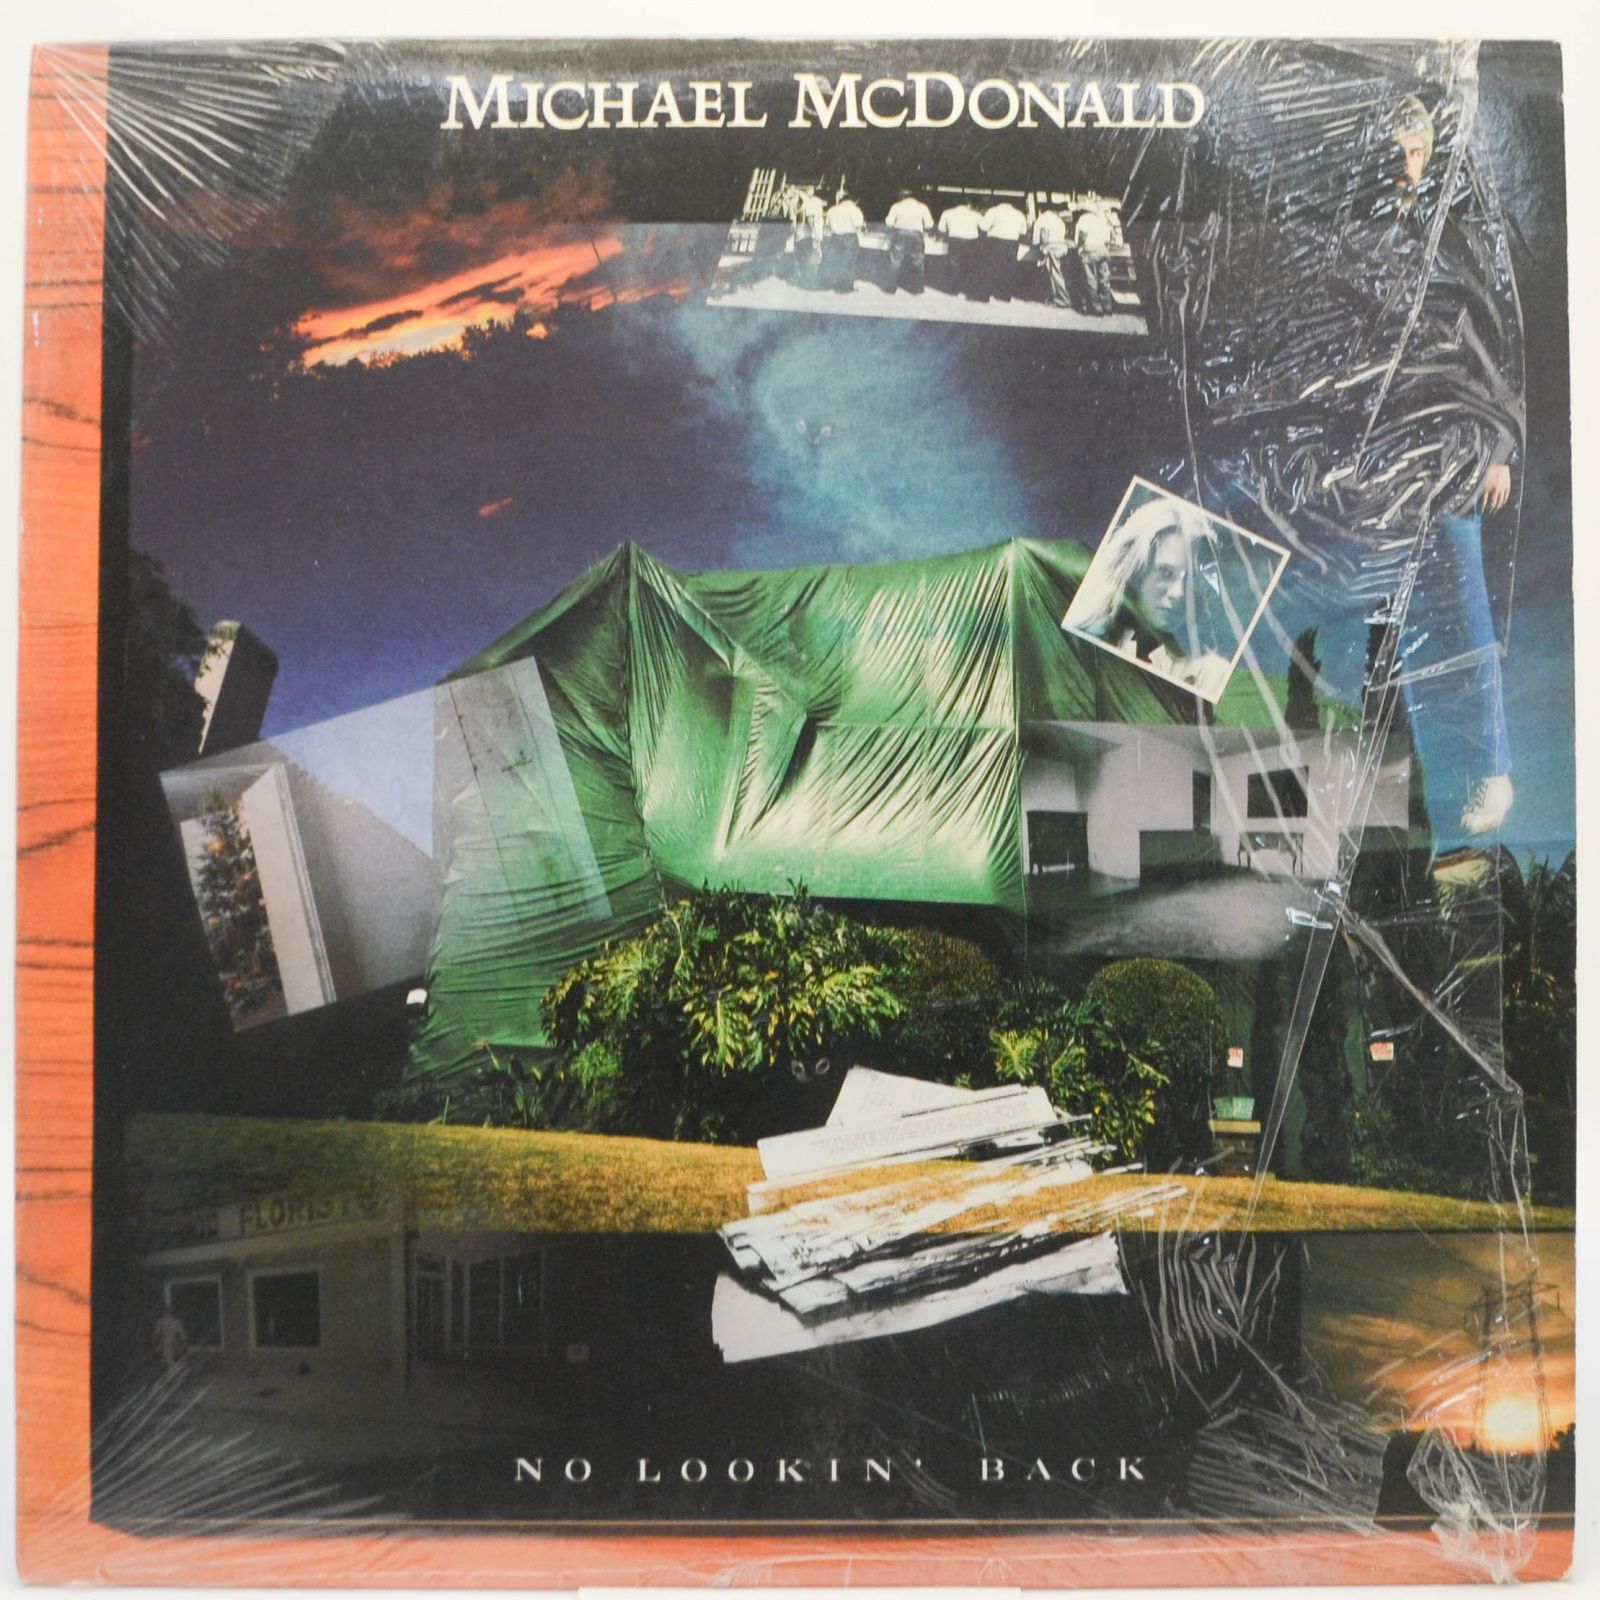 Michael McDonald — No Lookin' Back, 1985